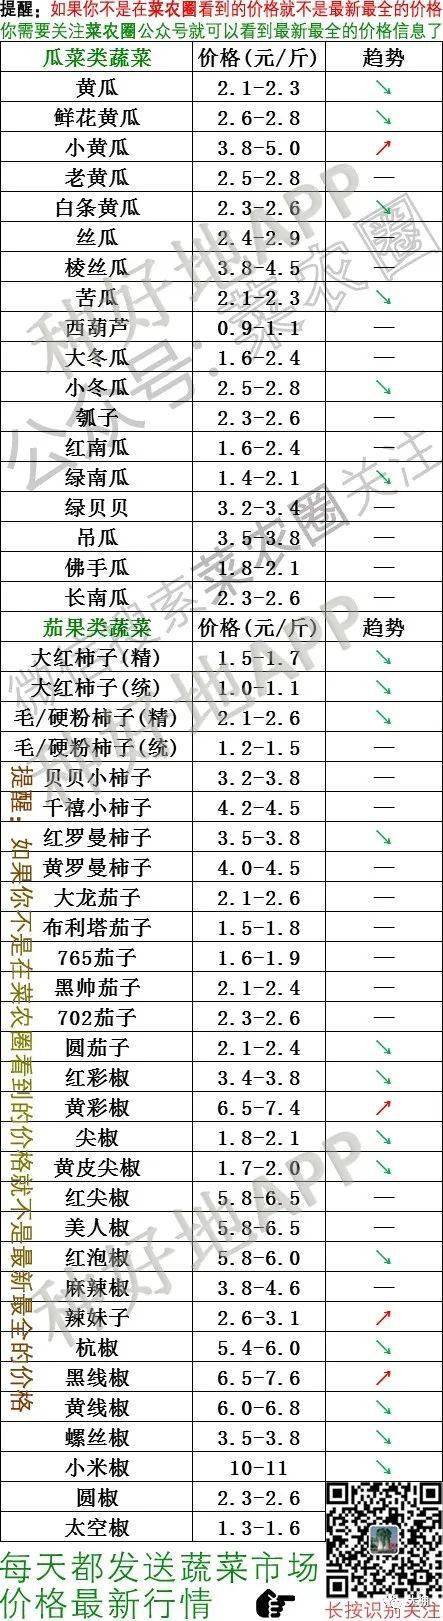 2021年3月17日北京新发地,山东寿光,云南,河北石家庄蔬菜价格行情一览表